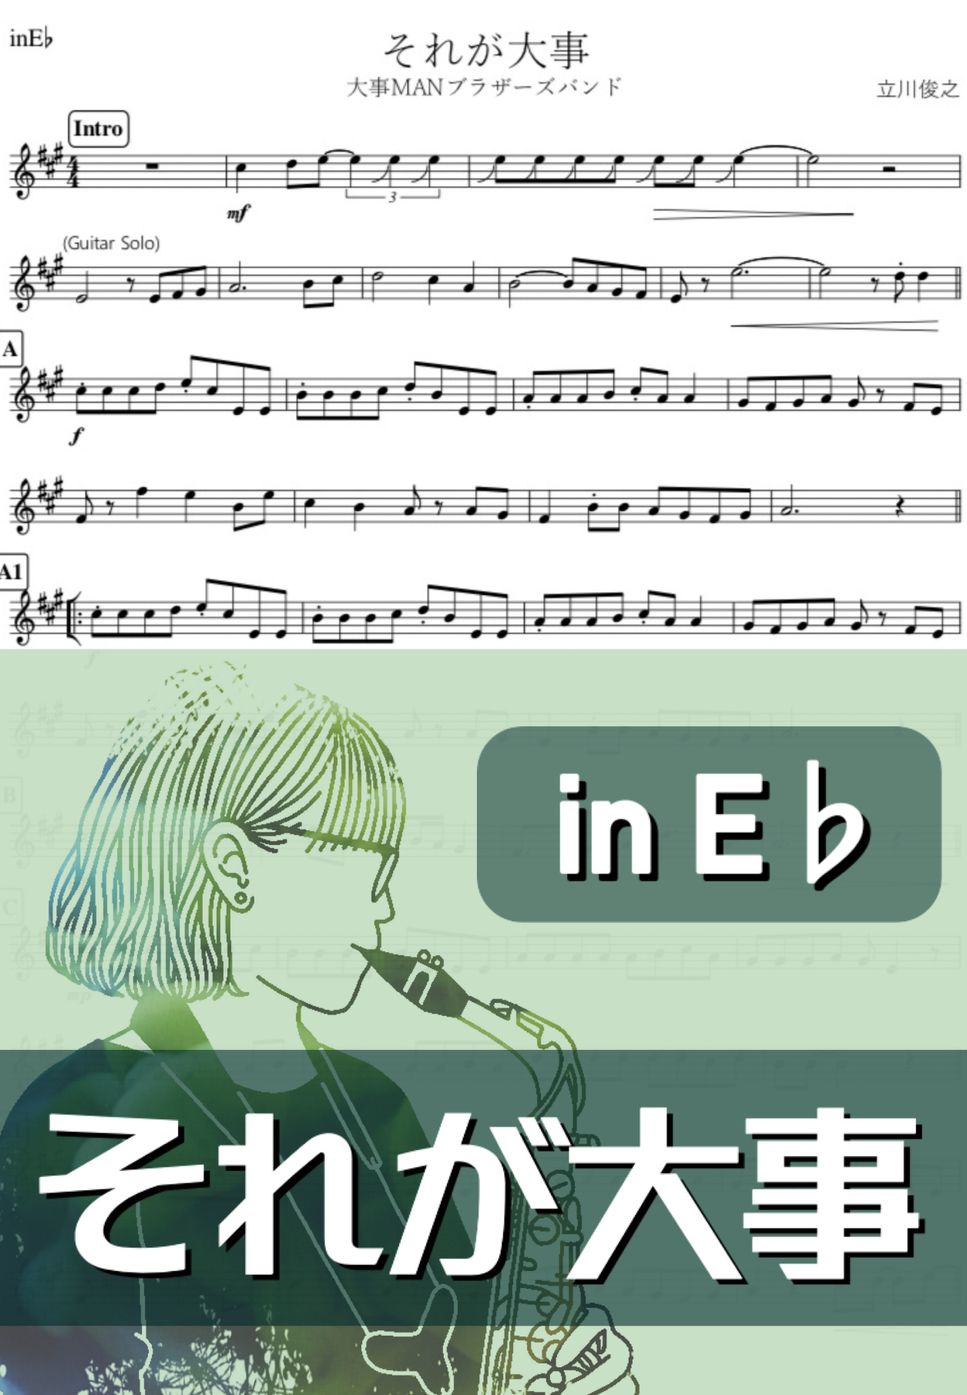 大事MANブラザーズバンド - それが大事 (E♭) by kanamusic